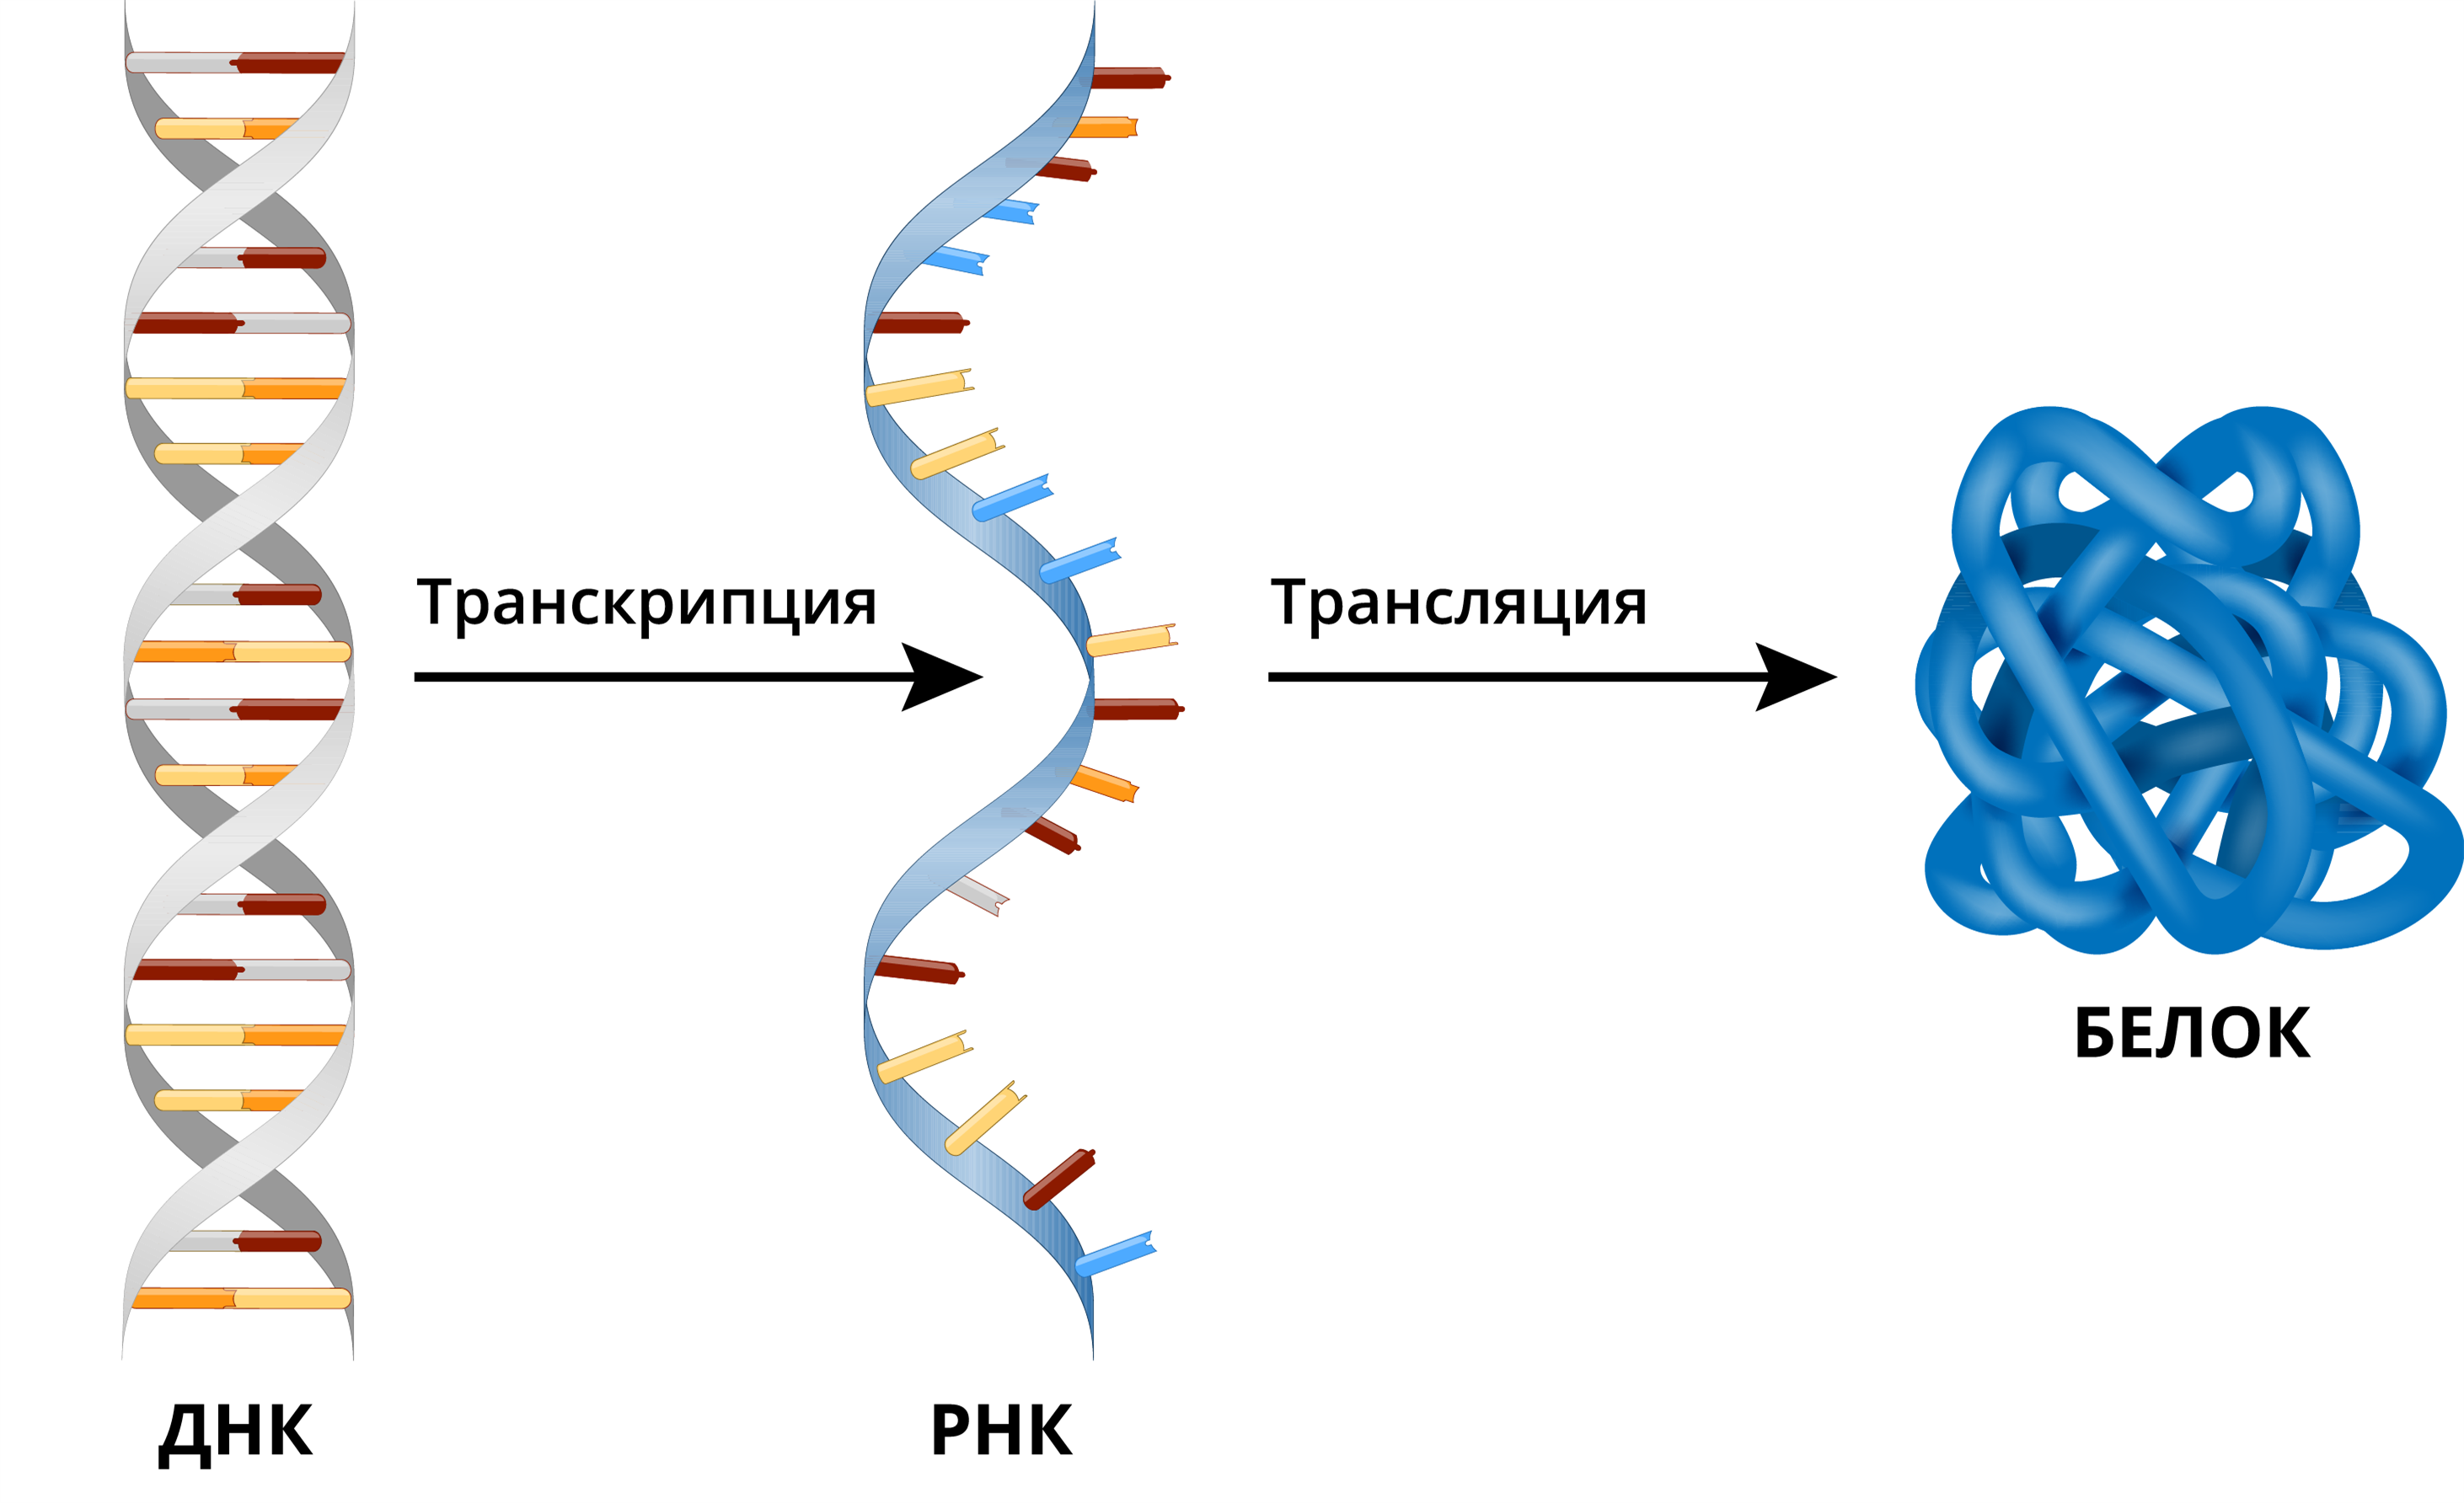 ДНК РНК белок схема. ДНК ИРНК белок. Транскрипция и трансляция ДНК. ДНК транскрипция РНК трансляция белок. Днк в соединении с белком